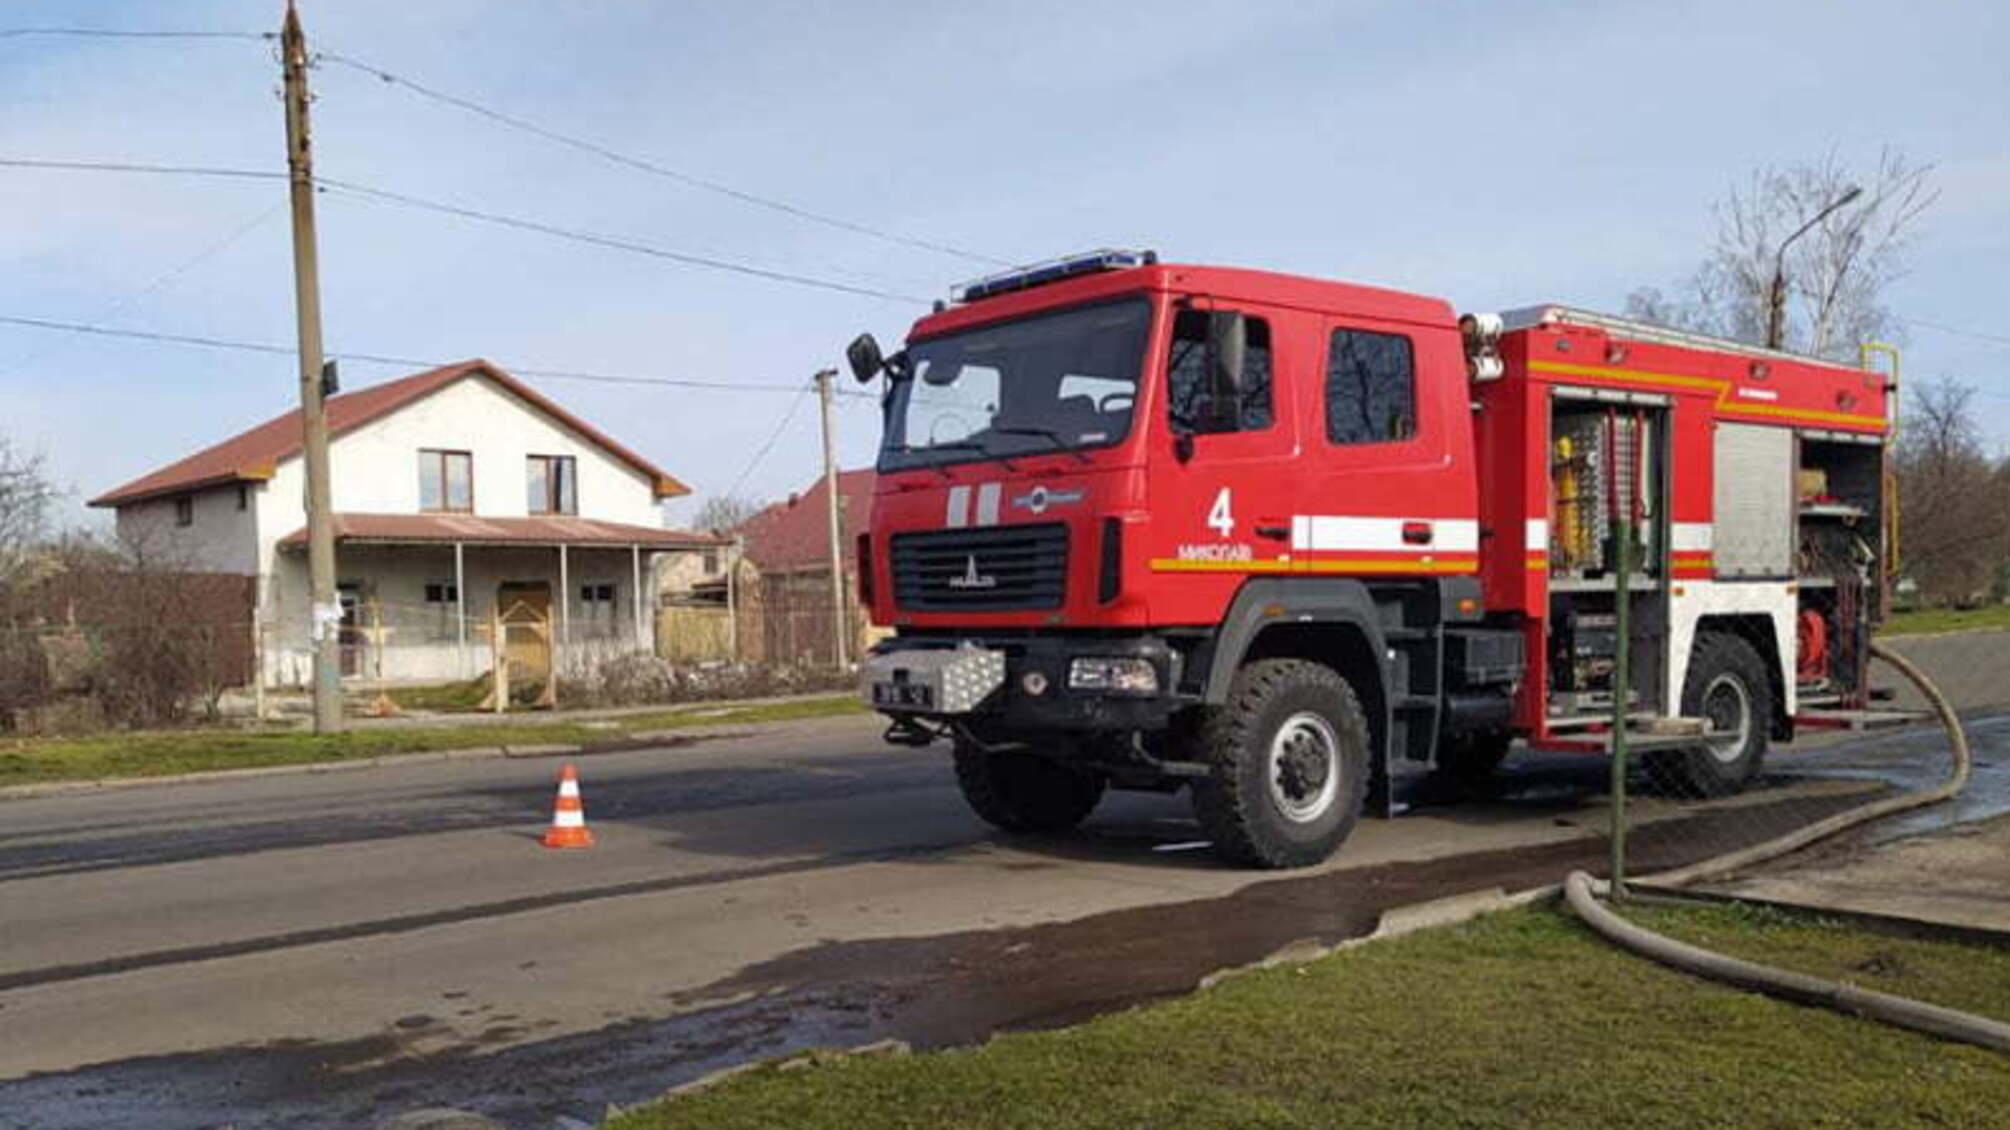 Миколаївська область: минулої доби вогнеборці загасили пожежі житлового будинку та двох господарчих споруд